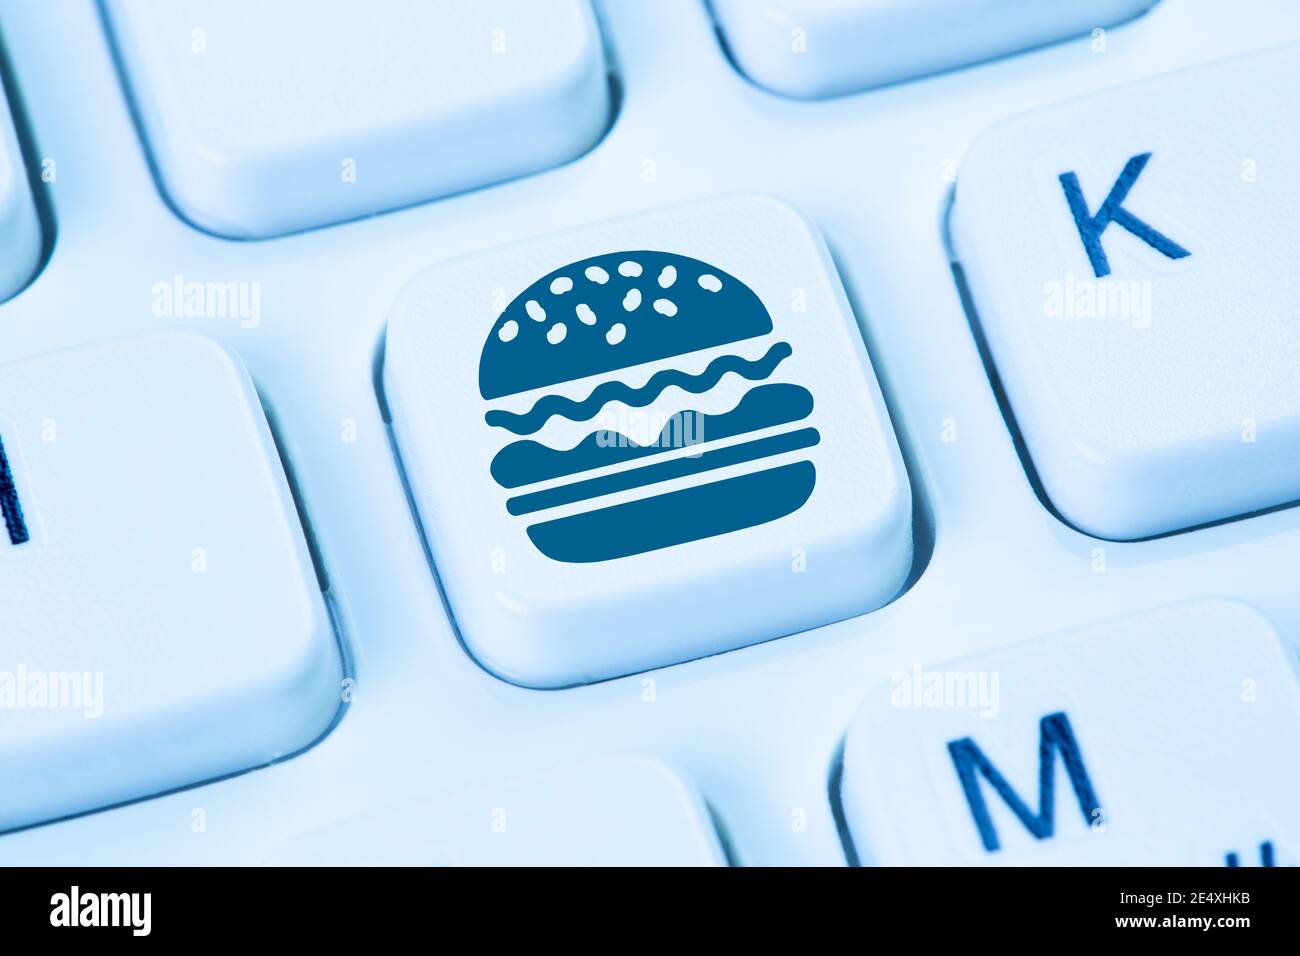 Livraison à domicile ordinateur hamburger fast food commande en ligne clavier de commande livrer Banque D'Images